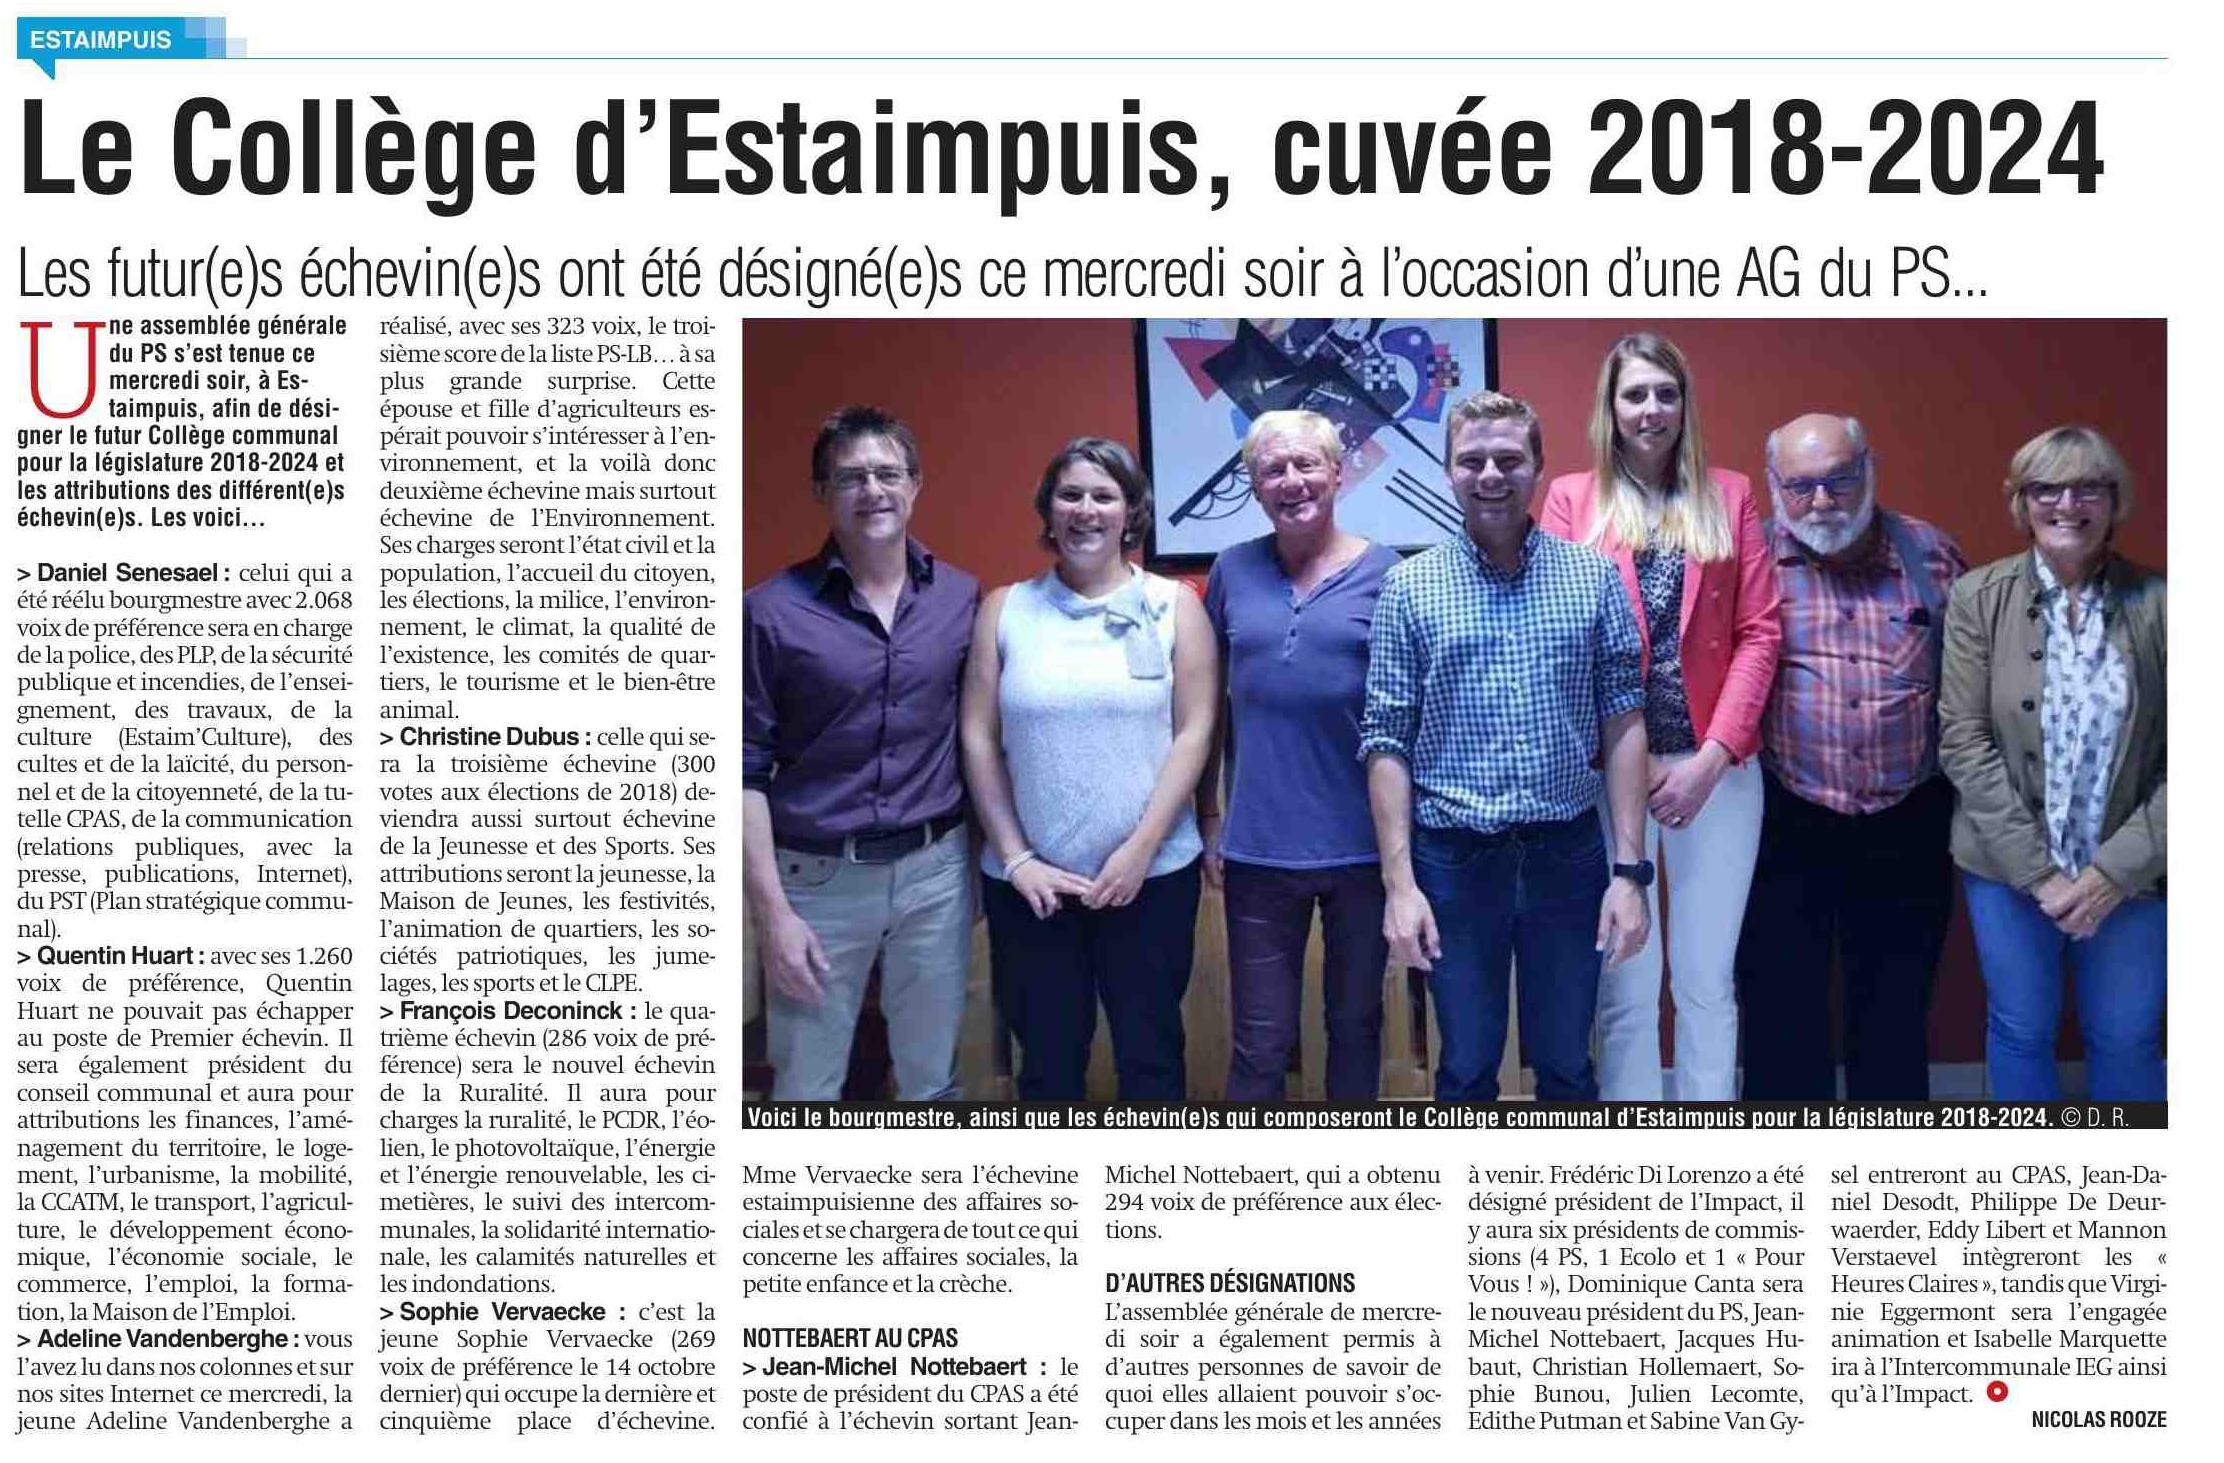 Le Collège d’Estaimpuis cuvée 2018-2024